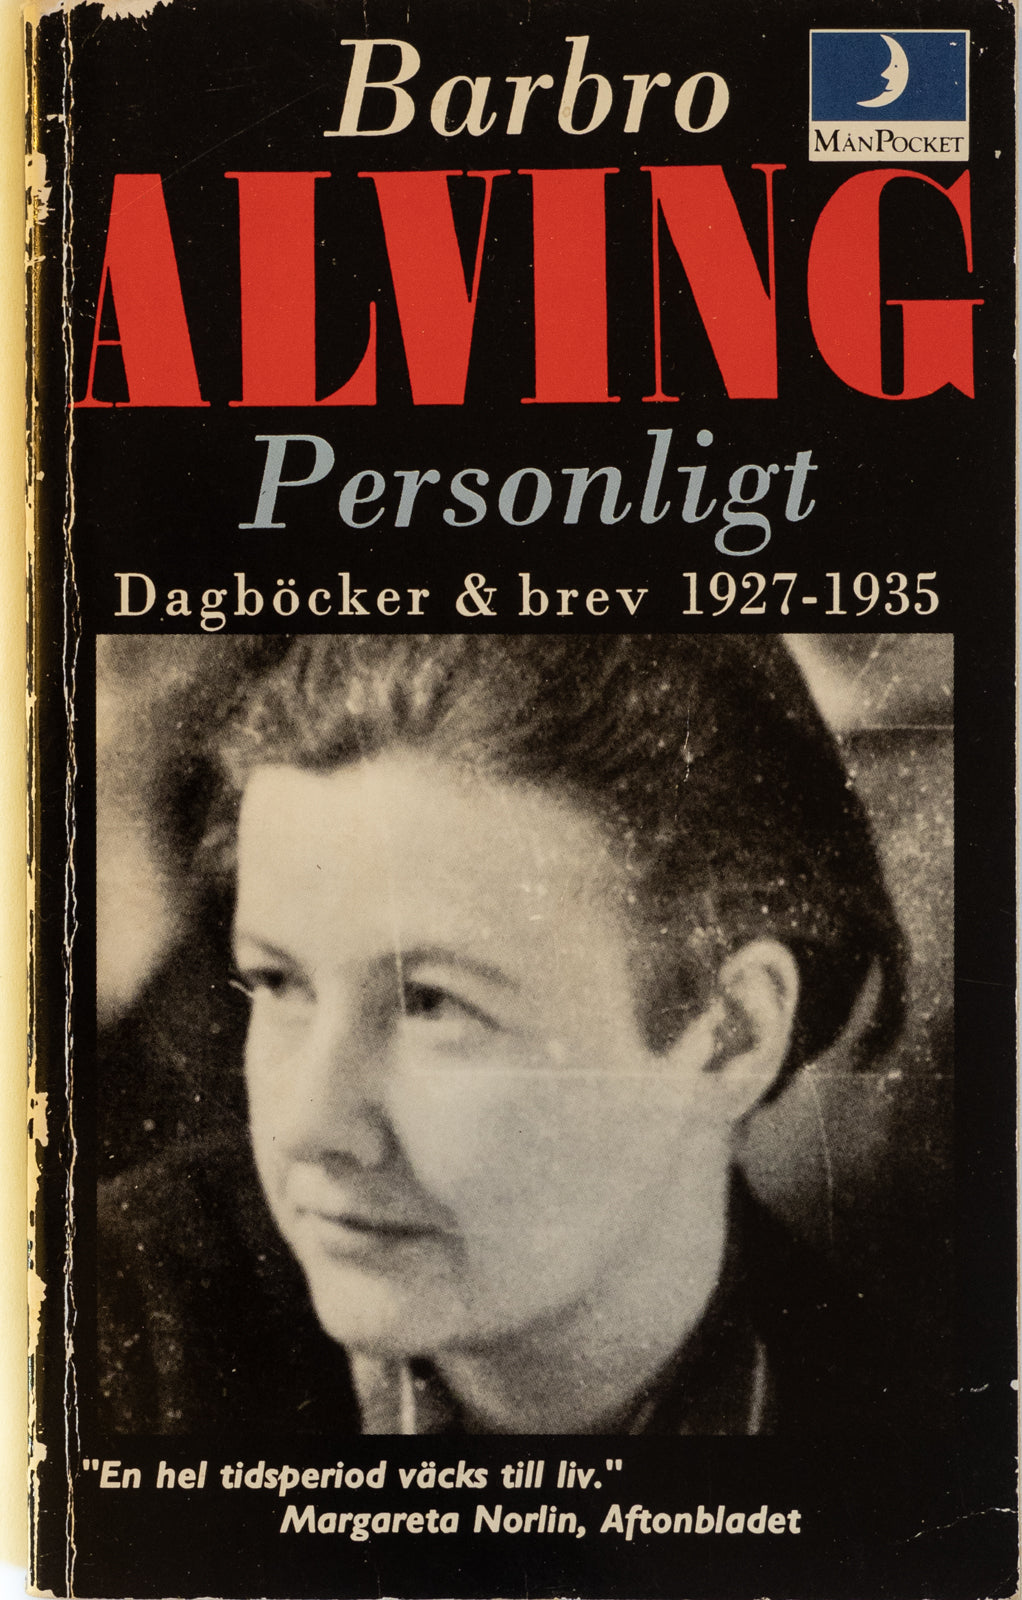 Personligt : dagböcker & brev 1927-1935. Barbro Alving. Sammanställda av Ruffa Alving-Olin och Birgit Petri